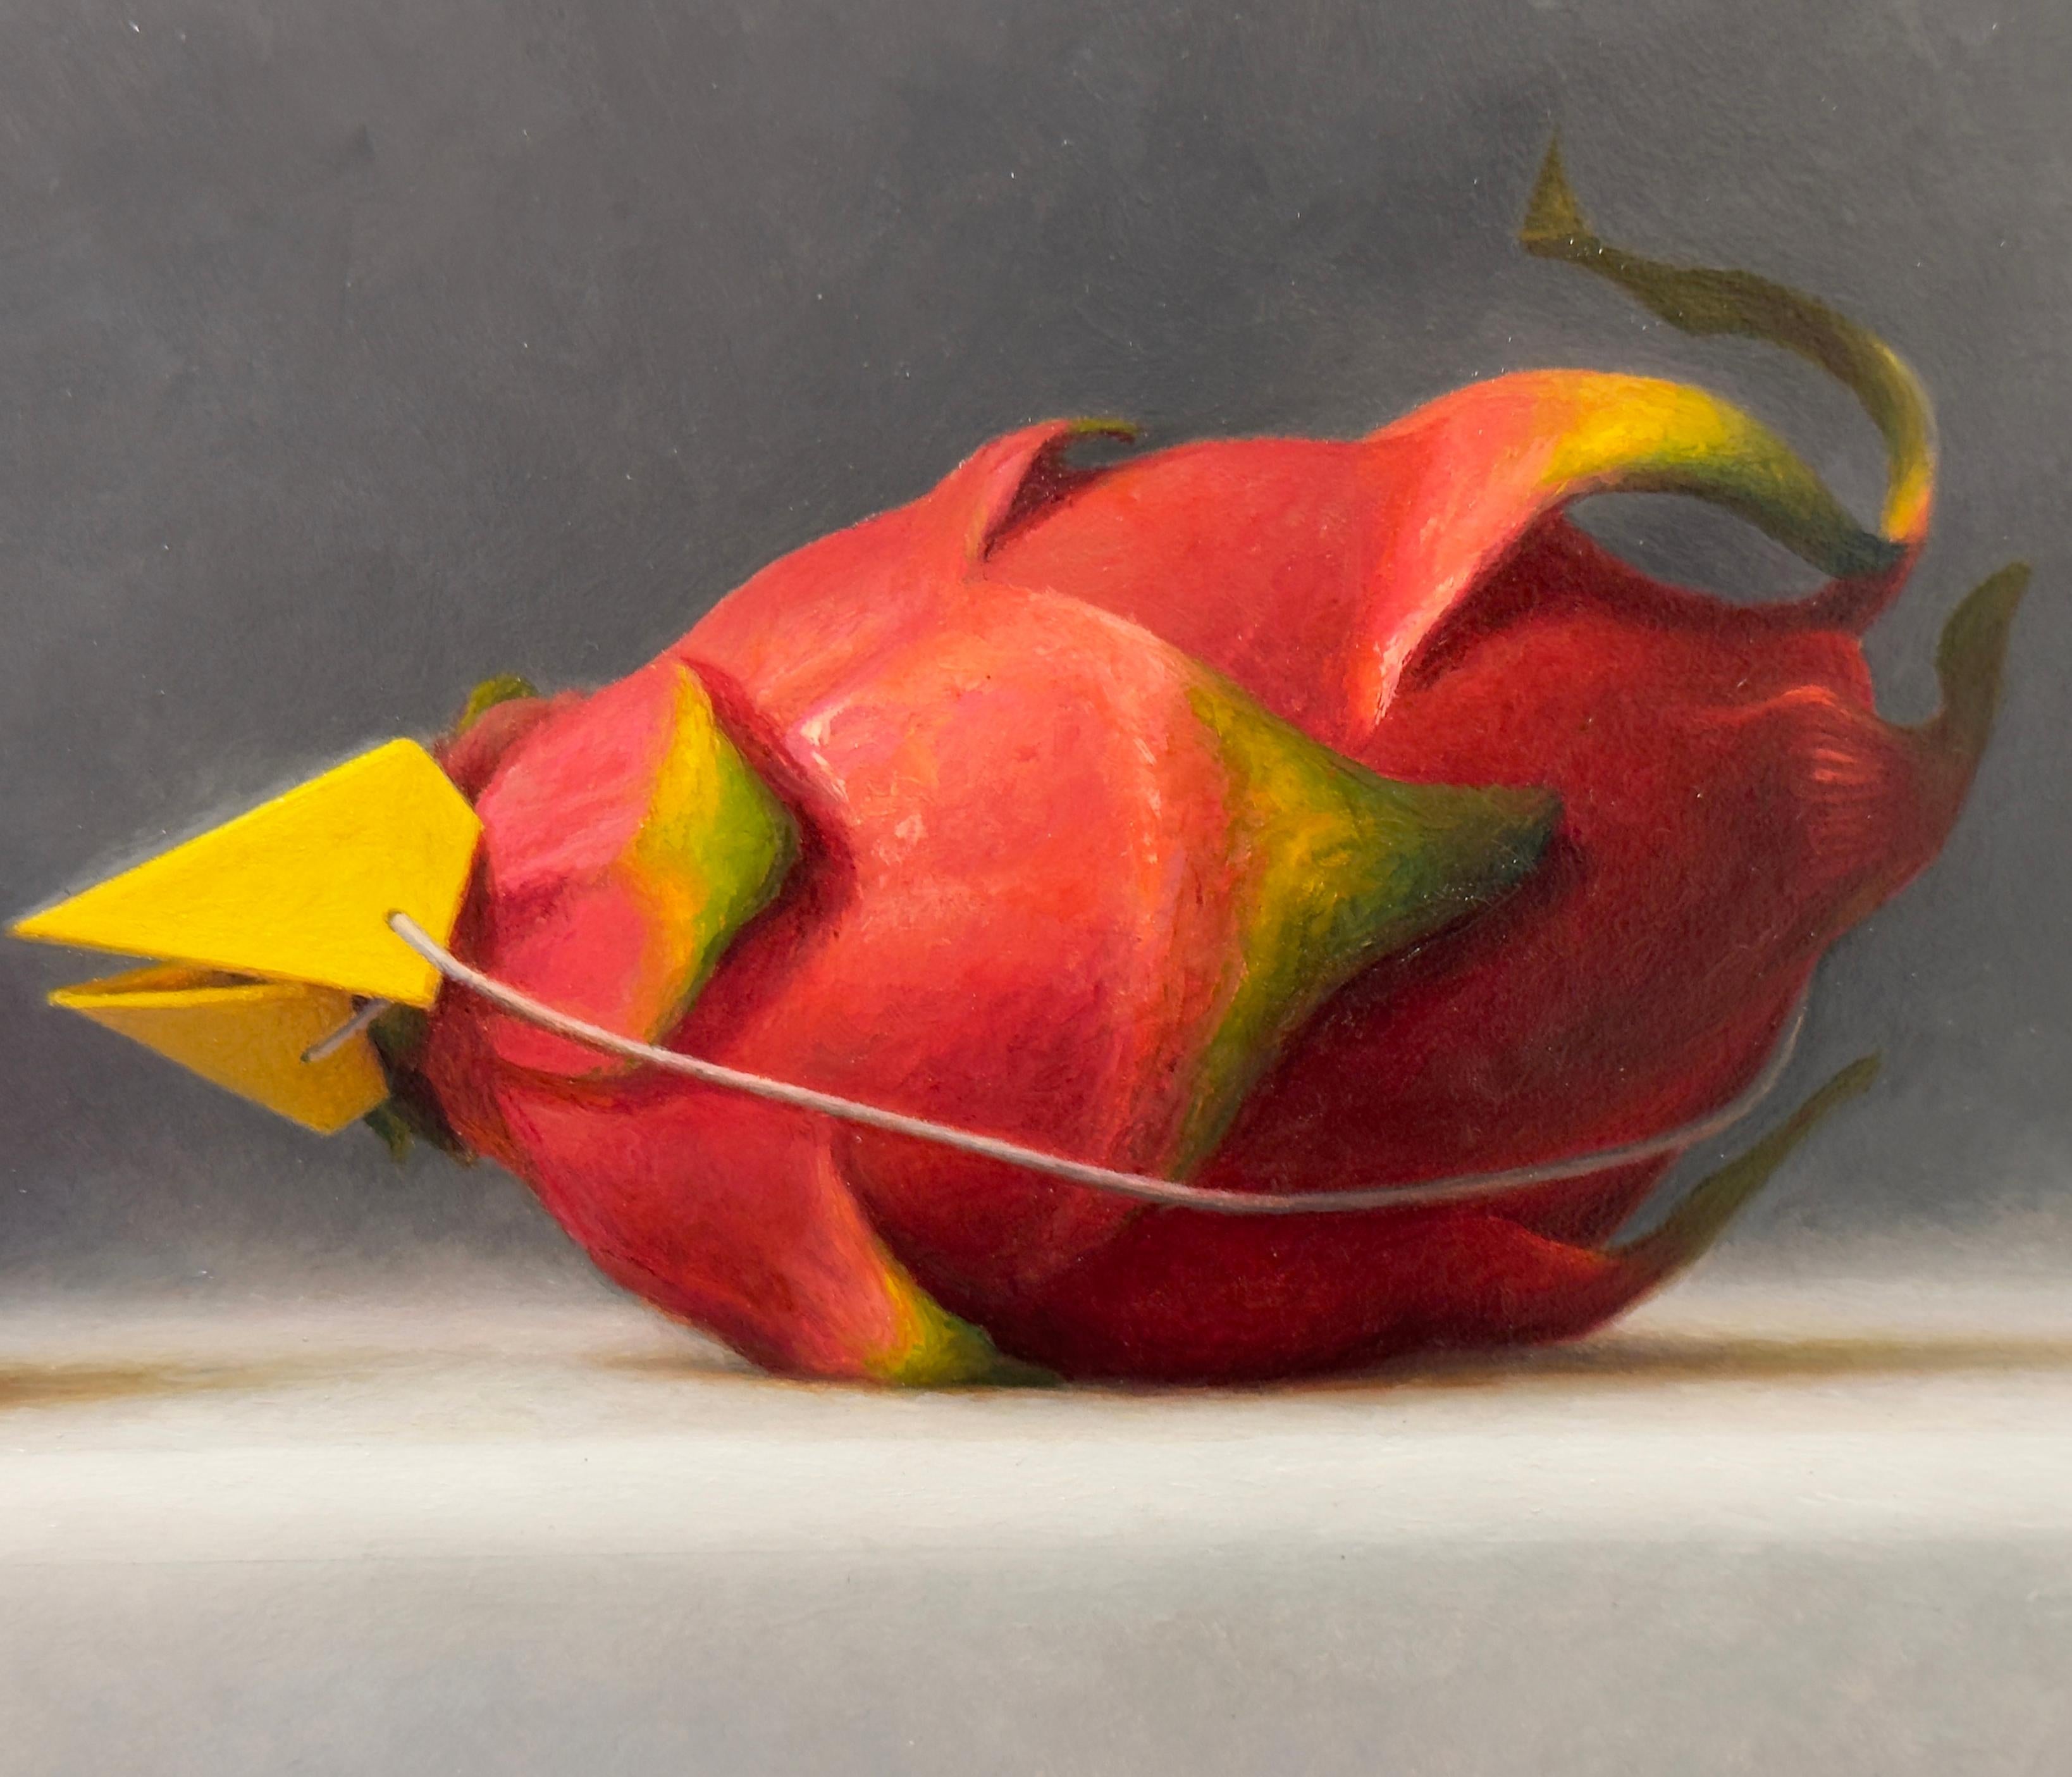 IMPOSTERS #25 (Fruit du dragon et canard magenta) - Réalisme / Jouet / Humour en vente 1